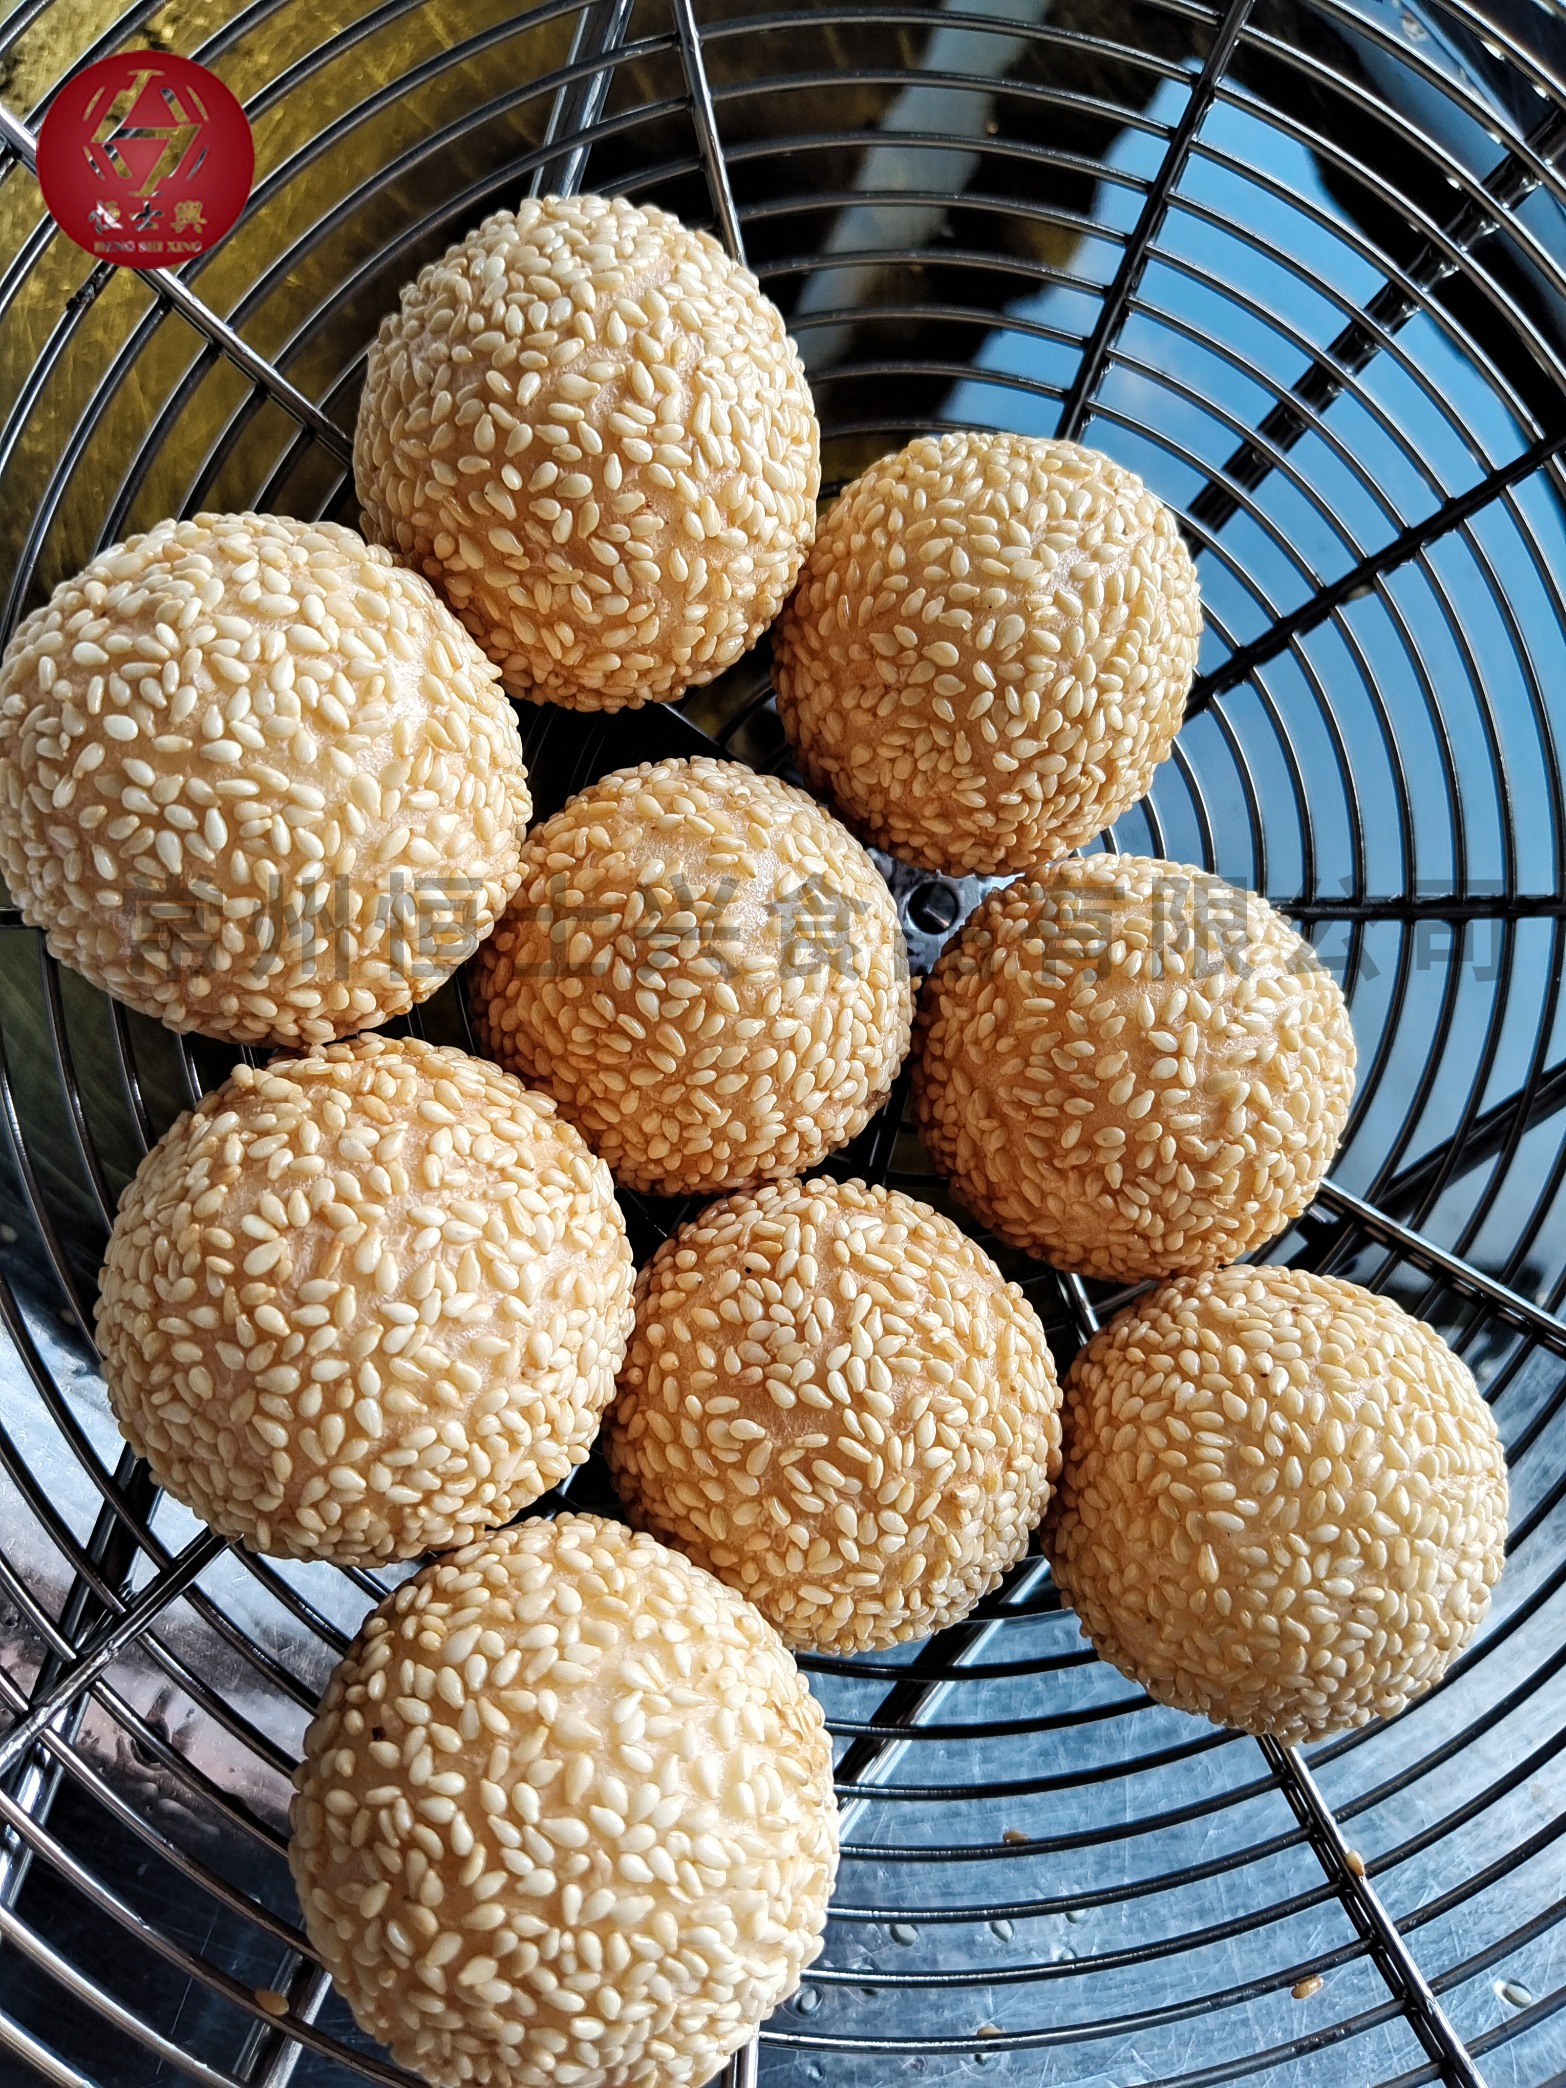 无锡乌米豇豆饼定制,南通蛋黄流沙麻球销售-恒士兴食品